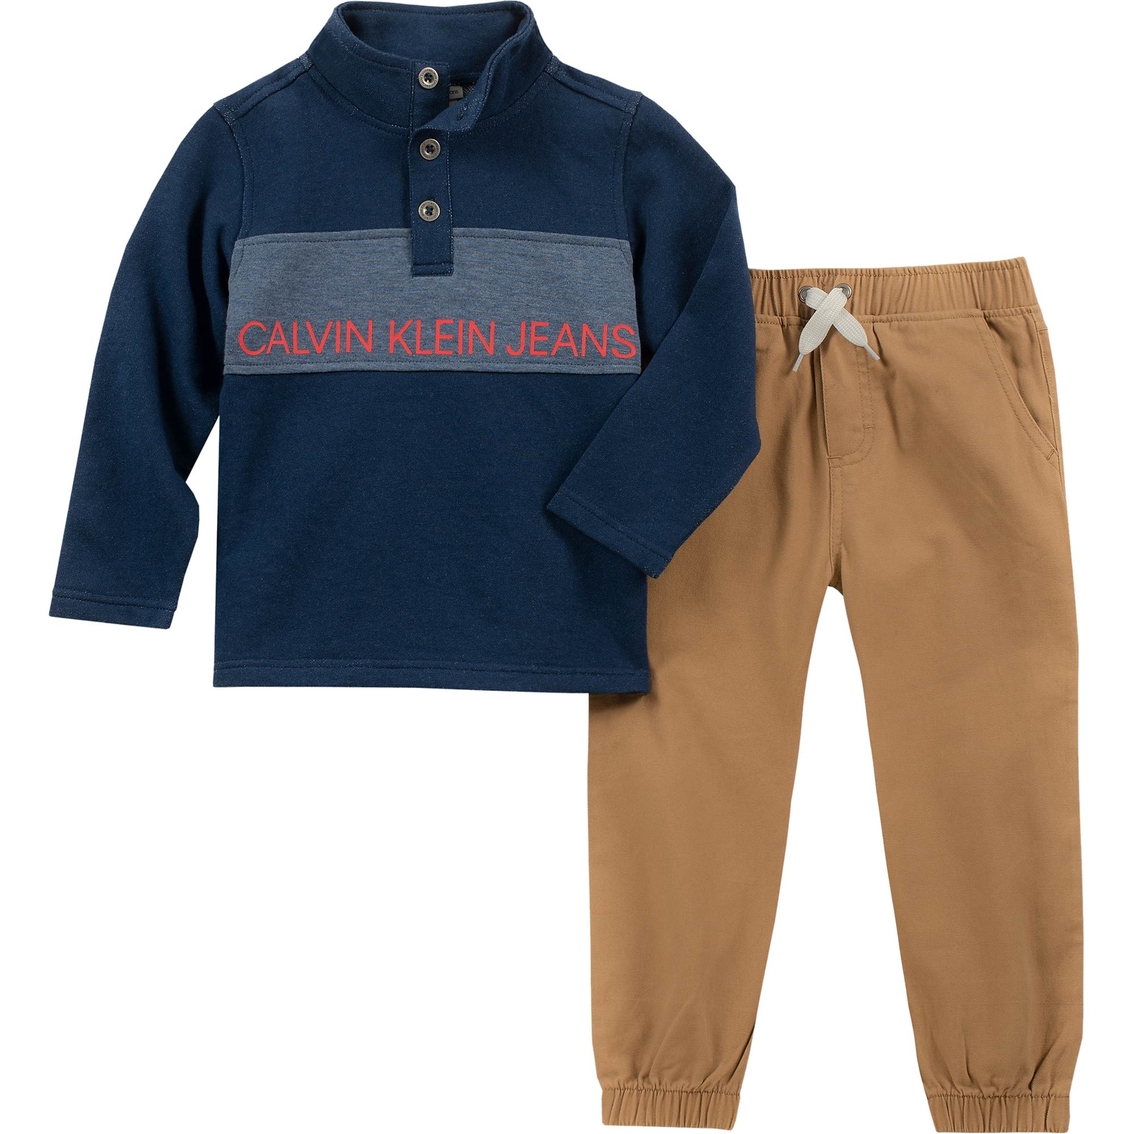 Calvin Klein Toddler Boys 2 Pc. Fleece Top With Pants Set | Toddler ...